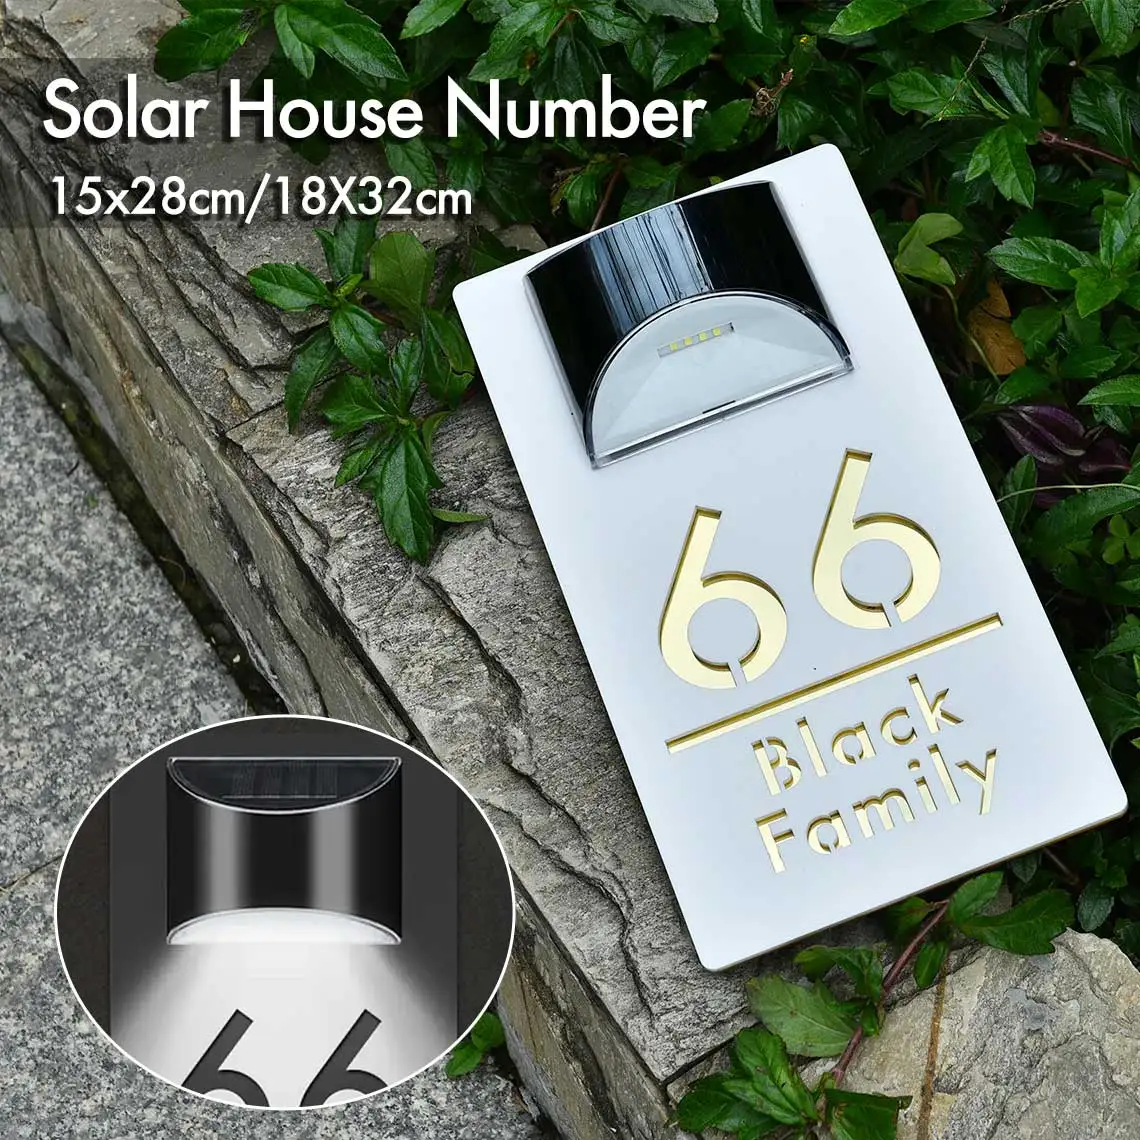 Personalizované solární dr. house značka LED lehký akryl talíř přizpůsobené adresovat plak outdoorové ulice jméno solární dr. house cifra značka